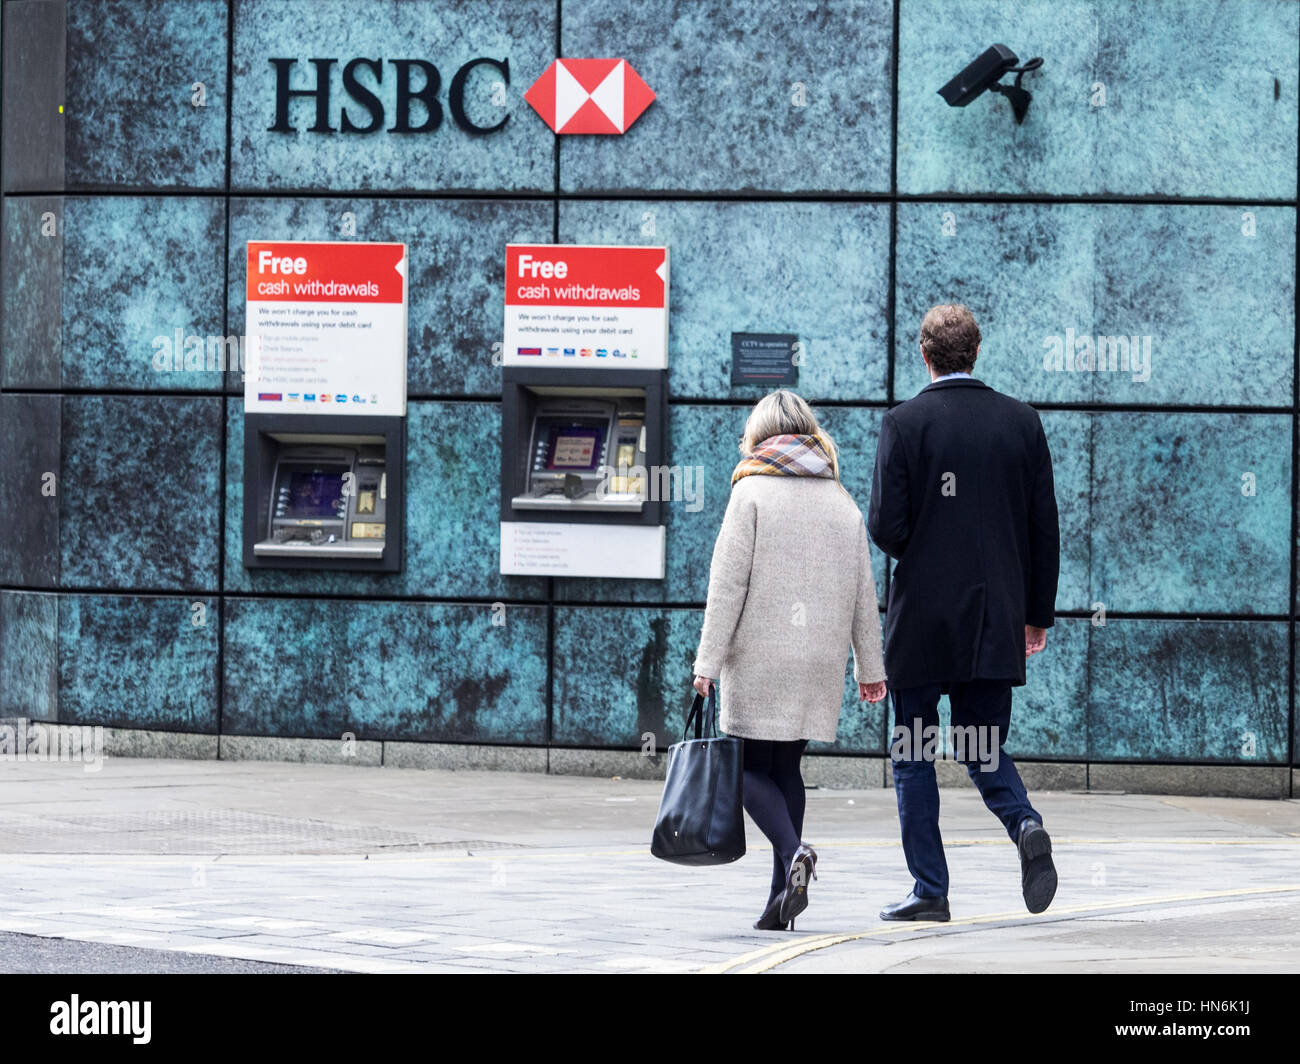 Bank Cash Machines - HSBC Cash Machines Londra - UN paio di camminate verso HSBC Cash Machines nel centro di Londra con telecamere di sicurezza che monitorano i bancomat. Foto Stock